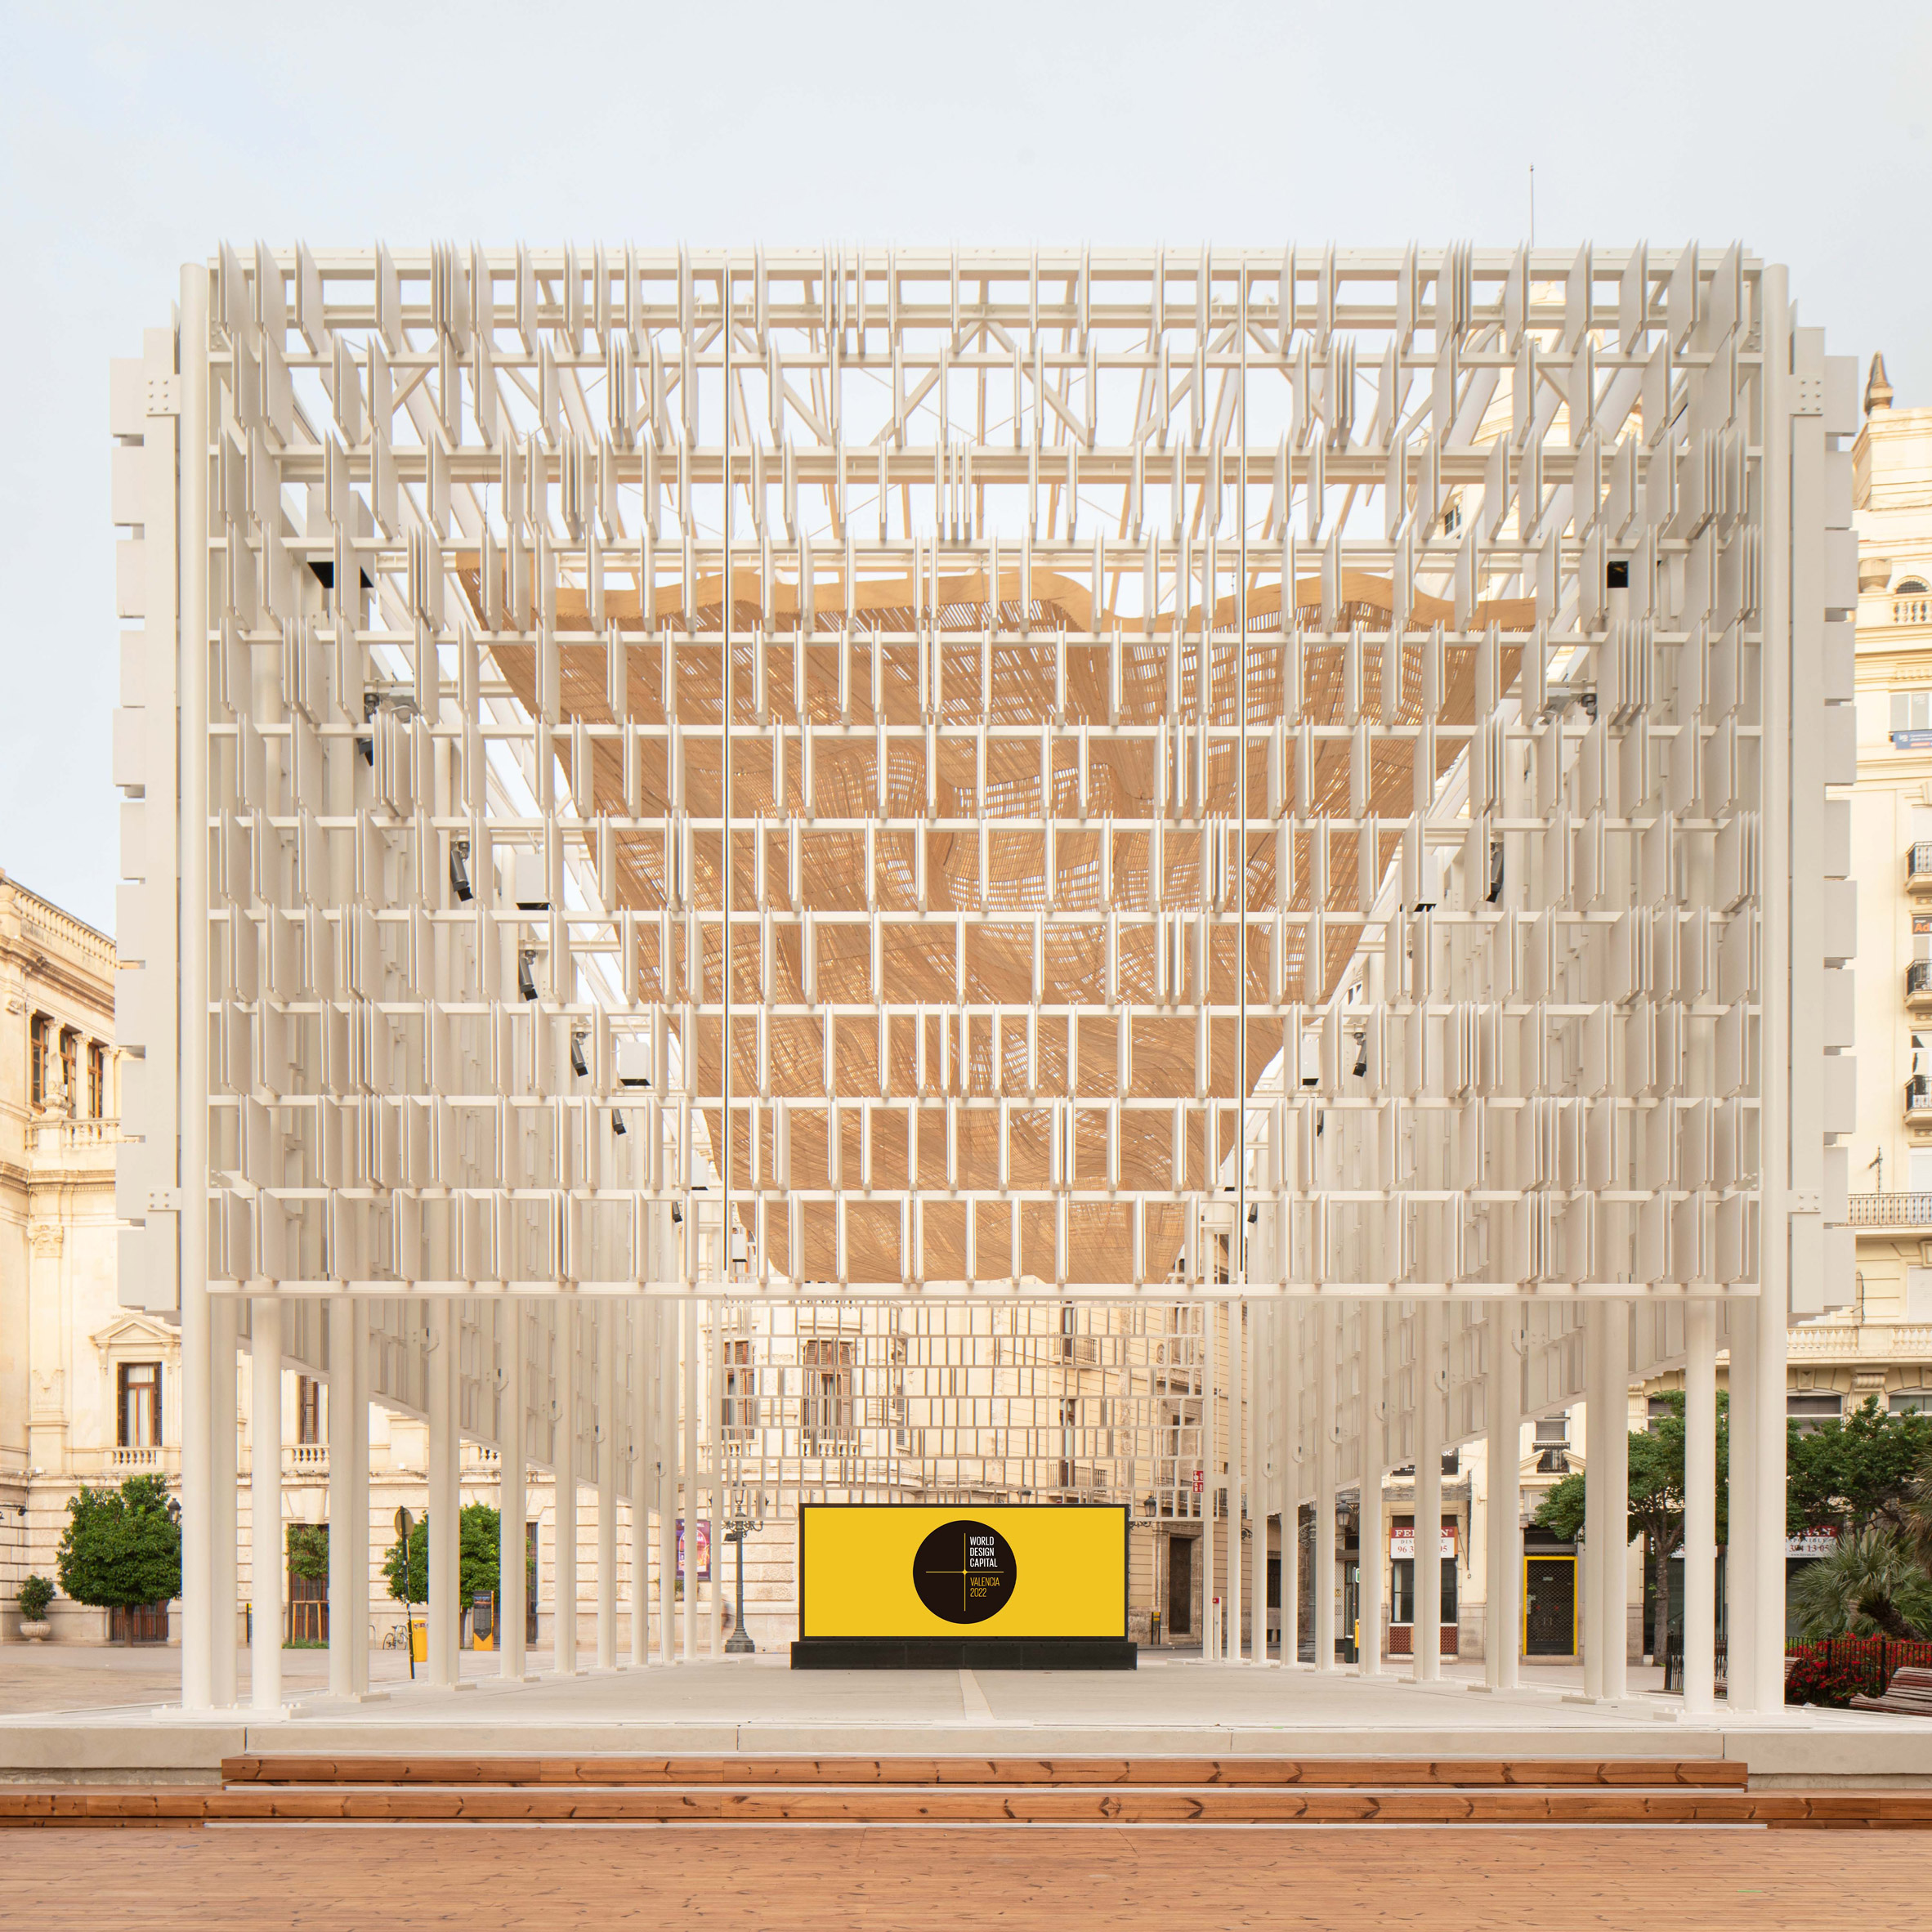 A photograph of the white pavilion structure Àgora València